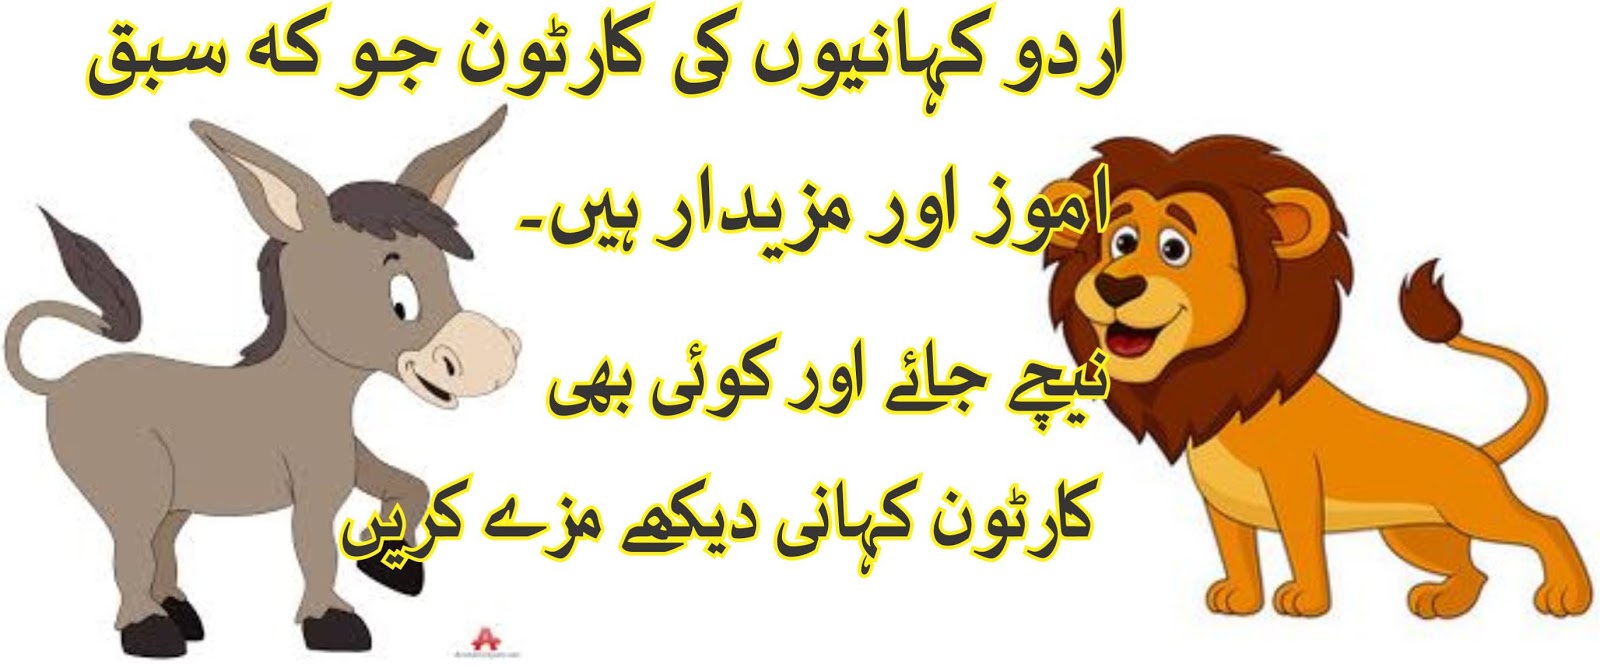 Kahani Cartoon in Urdu